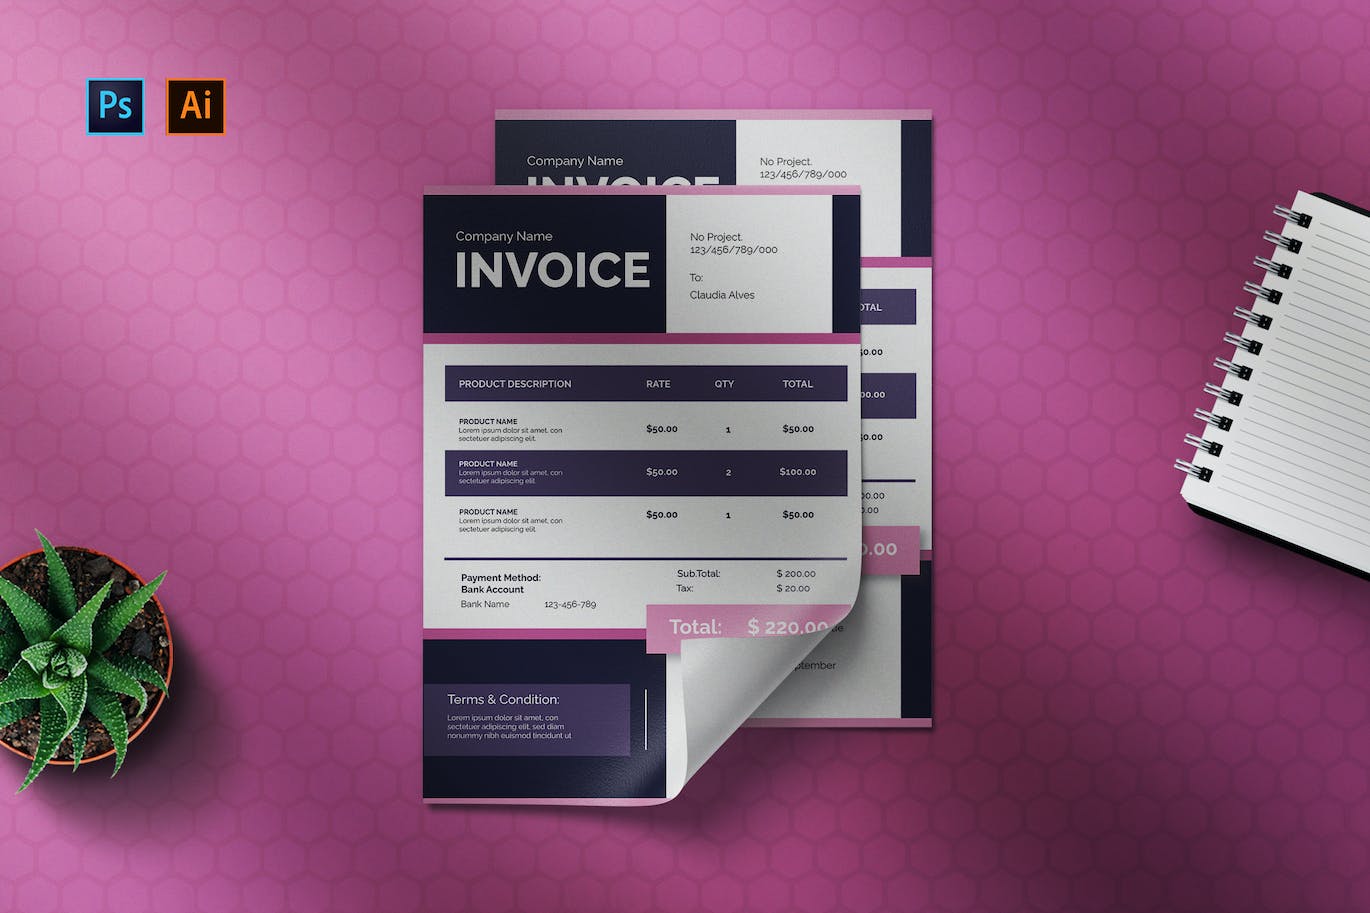 商业物品清单单据发票设计模板 Blupunk – Invoice Template 样机素材 第1张